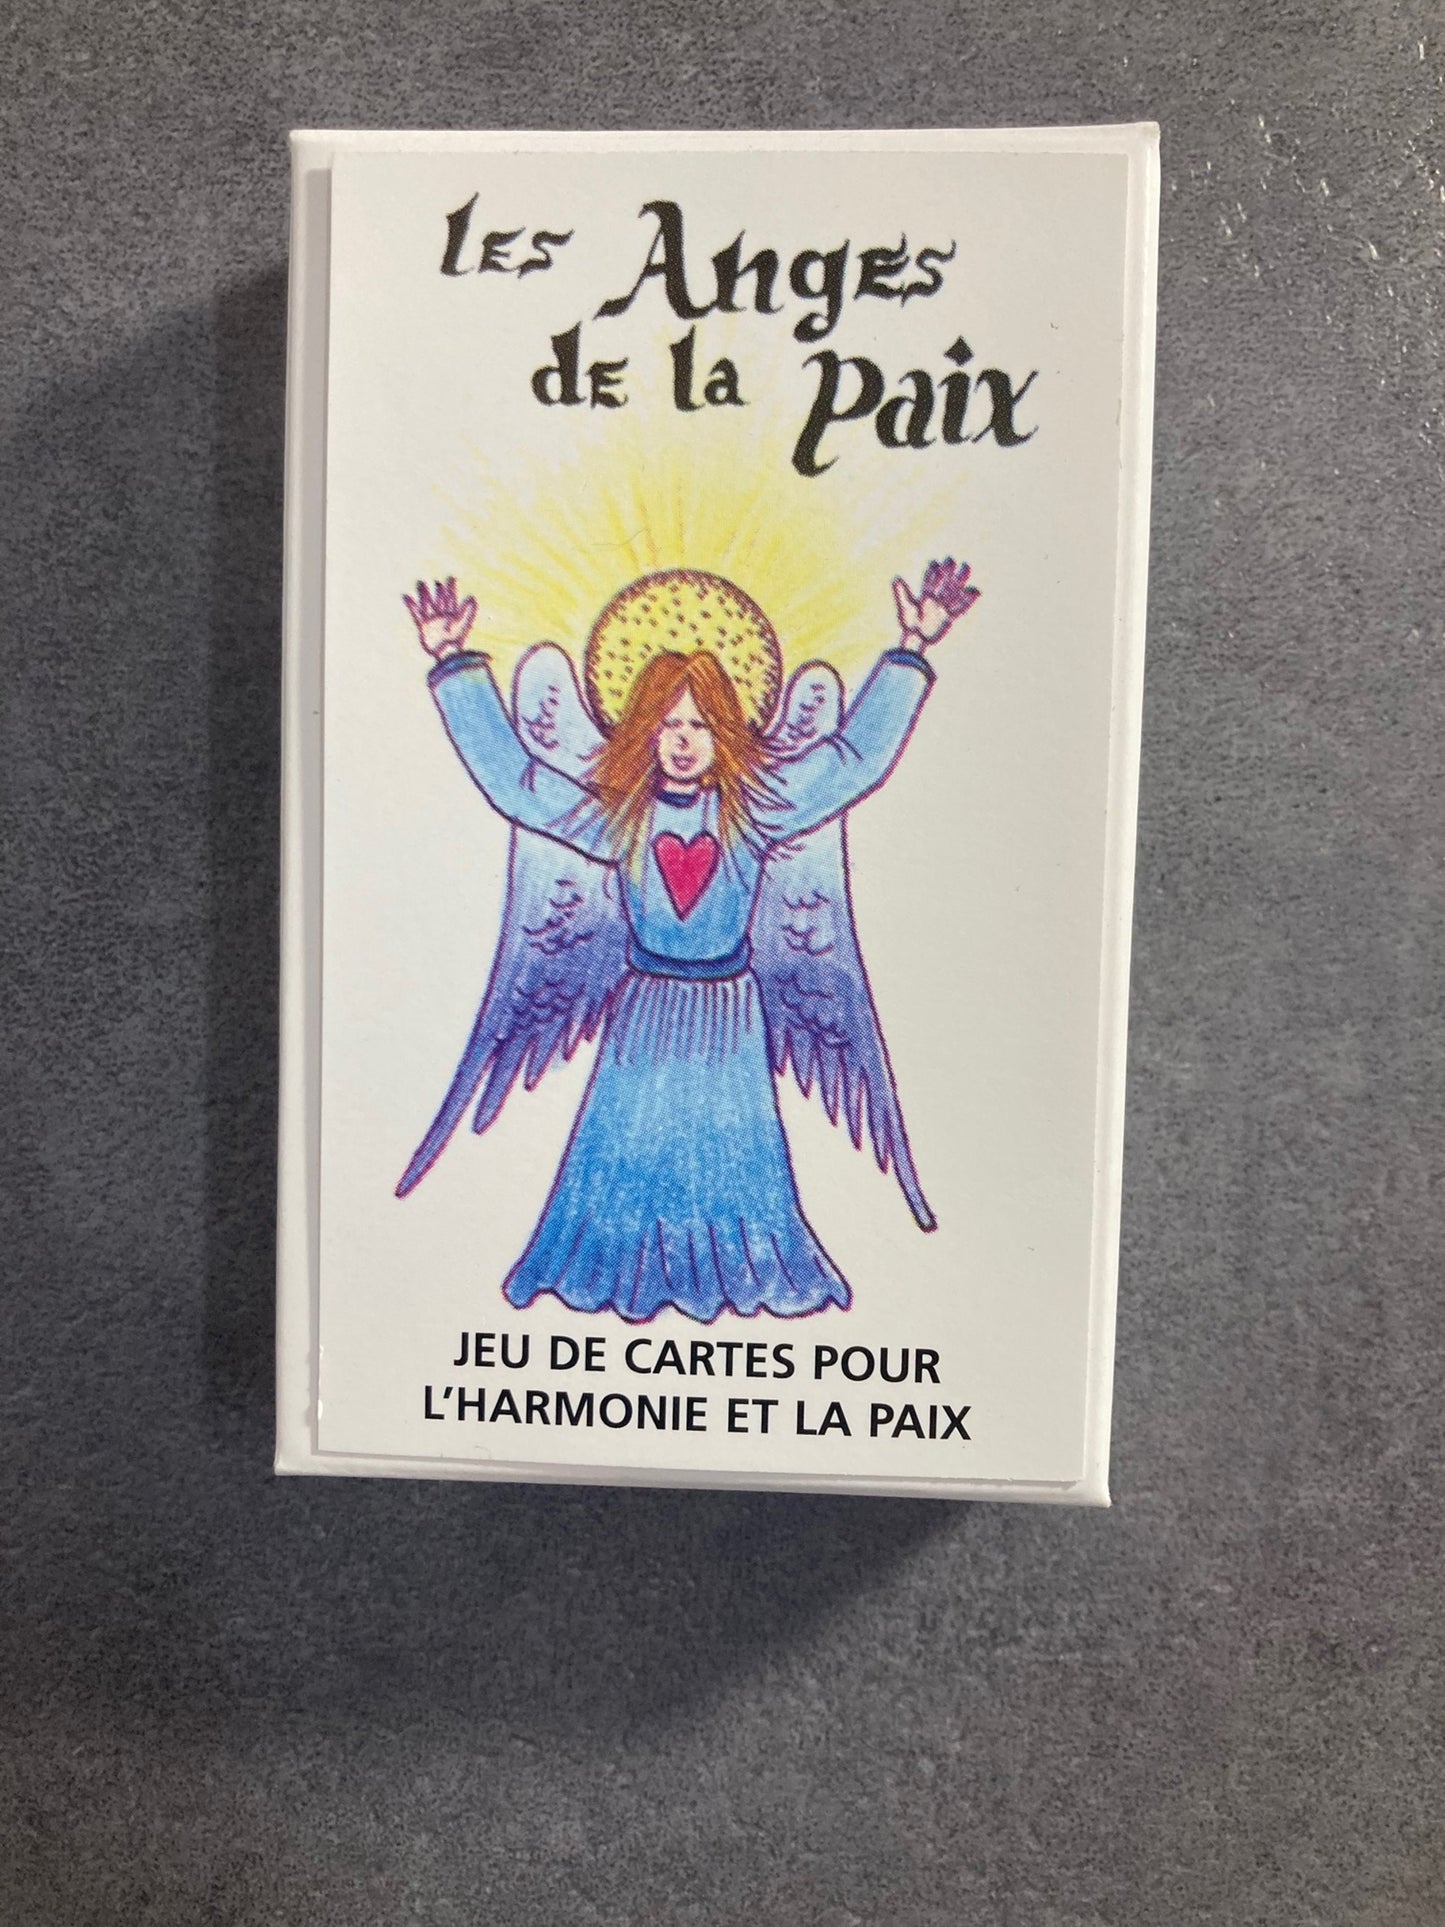 Les Anges de la paix - Jeu de cartes pour l'harmonie et la paix - Charles Brousseau & Lynn Gauthier